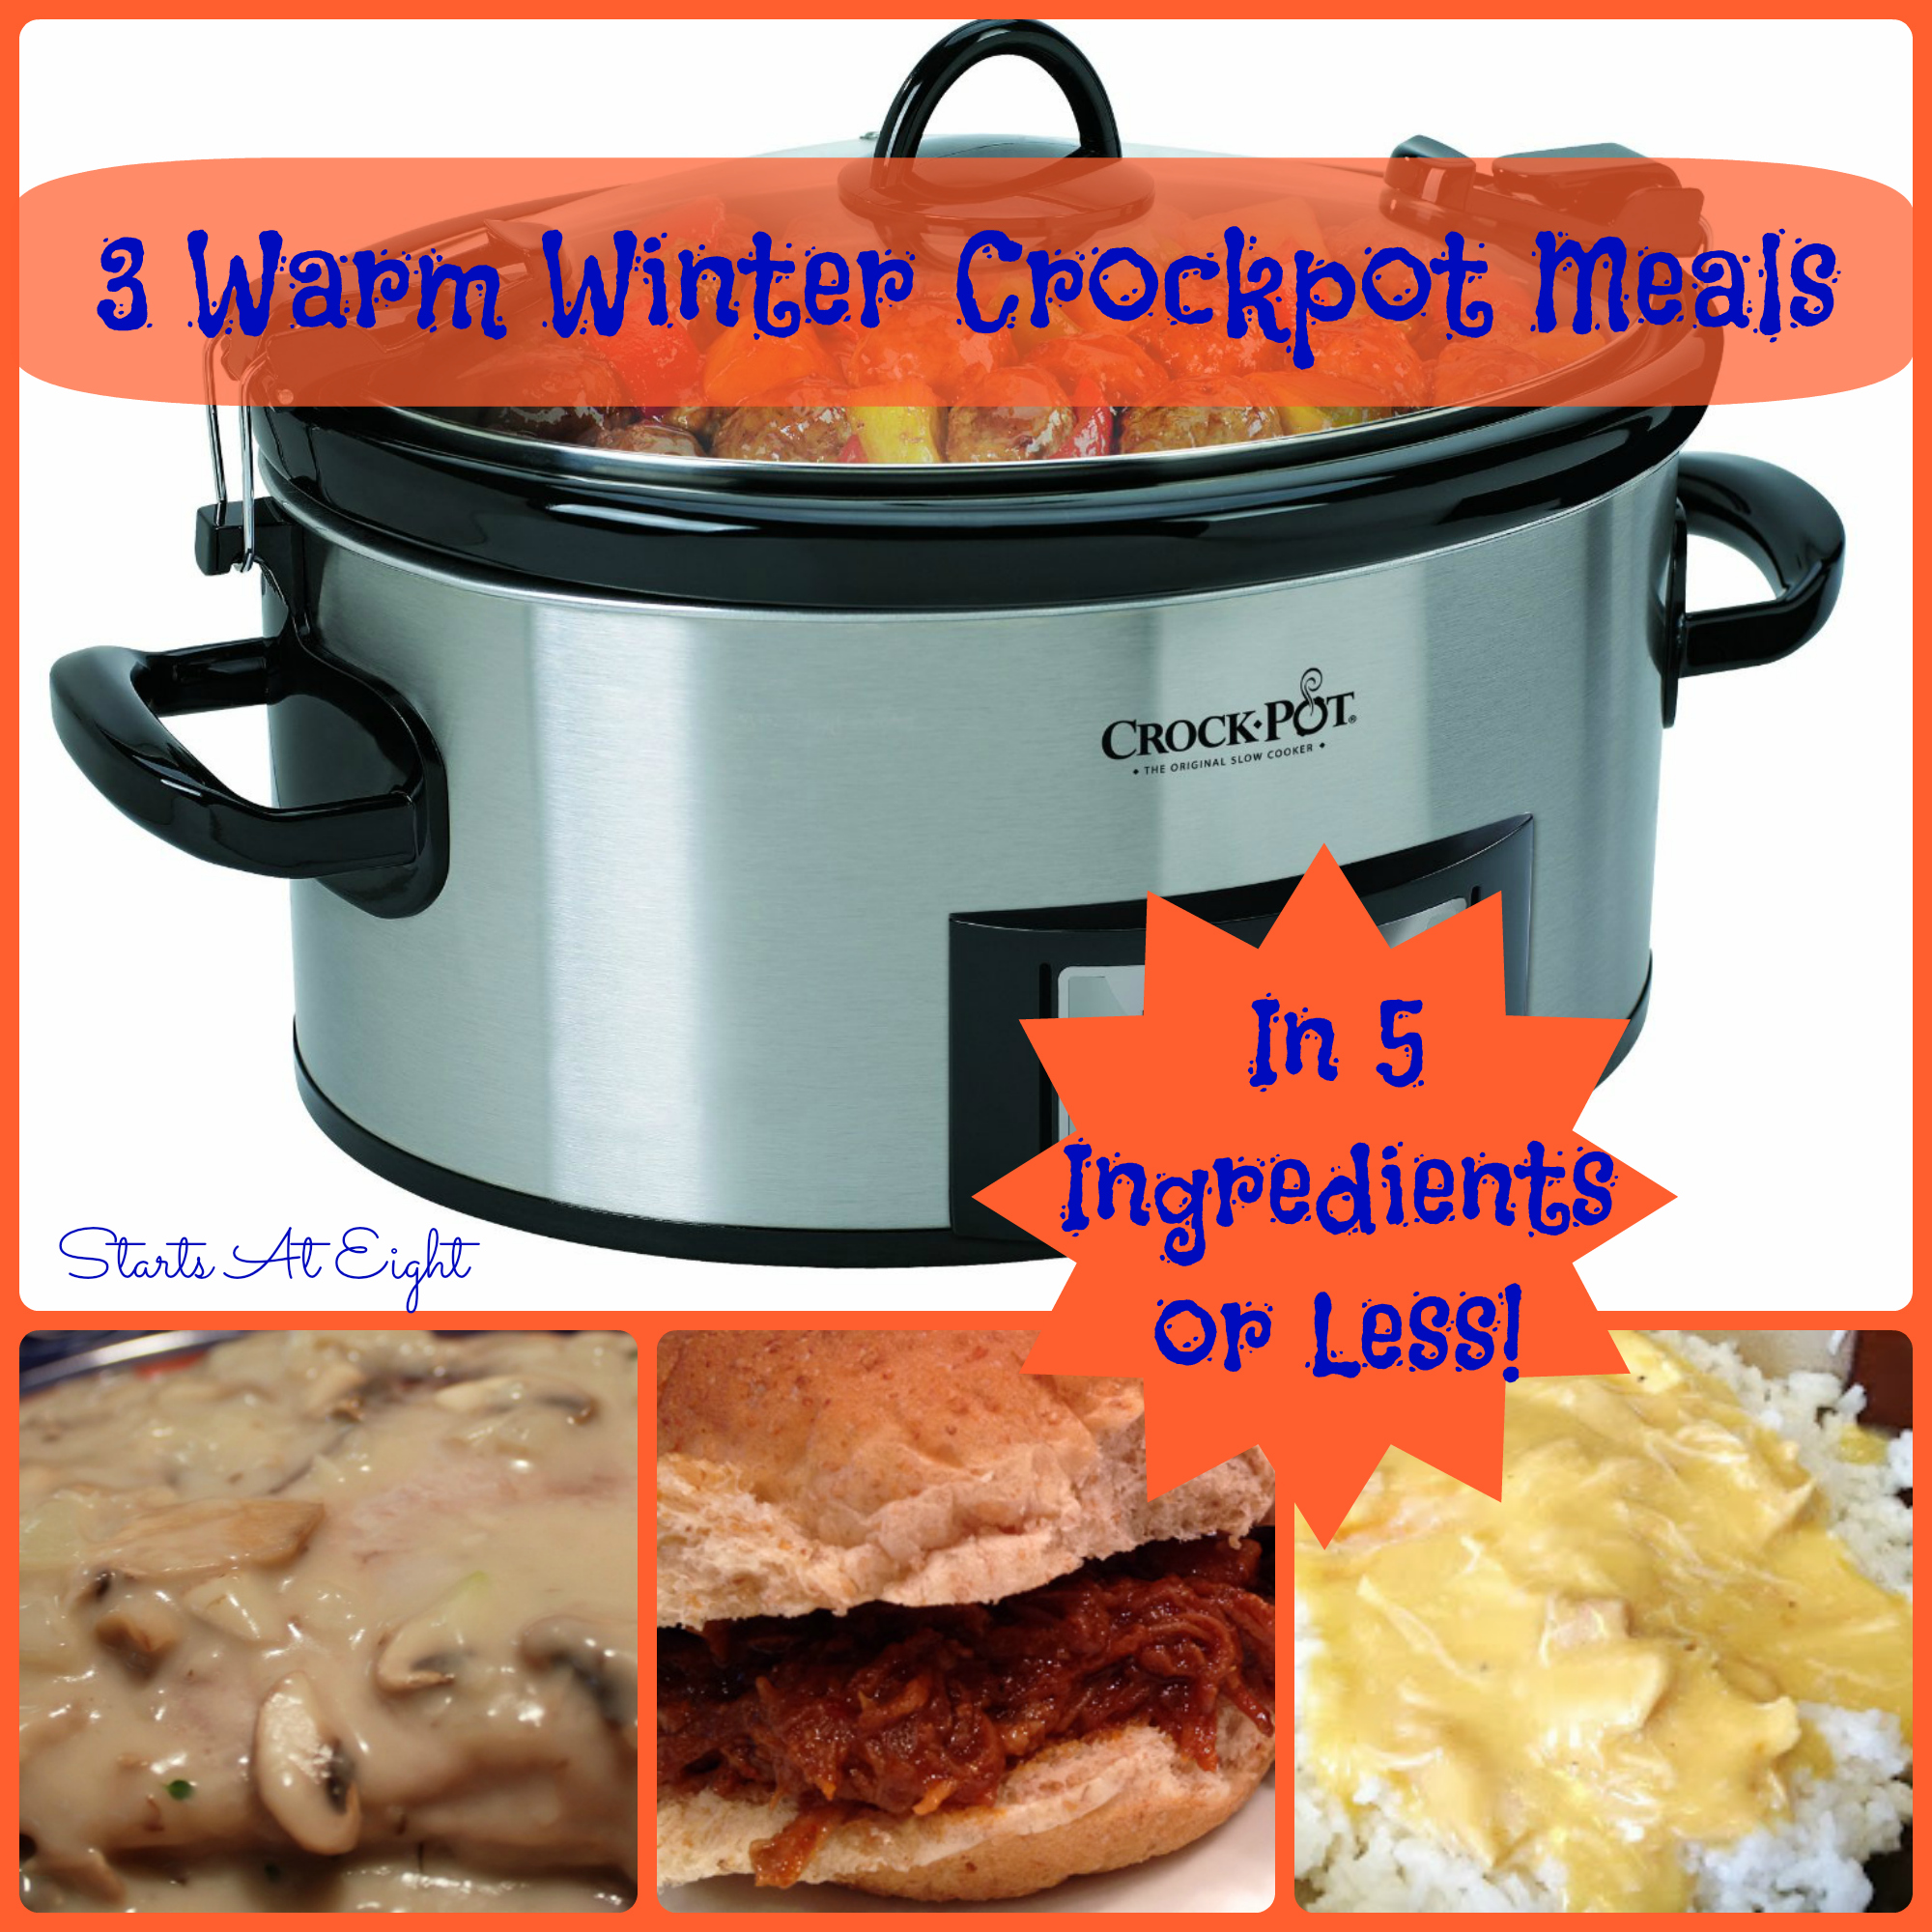 http://www.startsateight.com/wp-content/uploads/2014/01/3-Warm-Winter-Crockpot-Meals.jpg